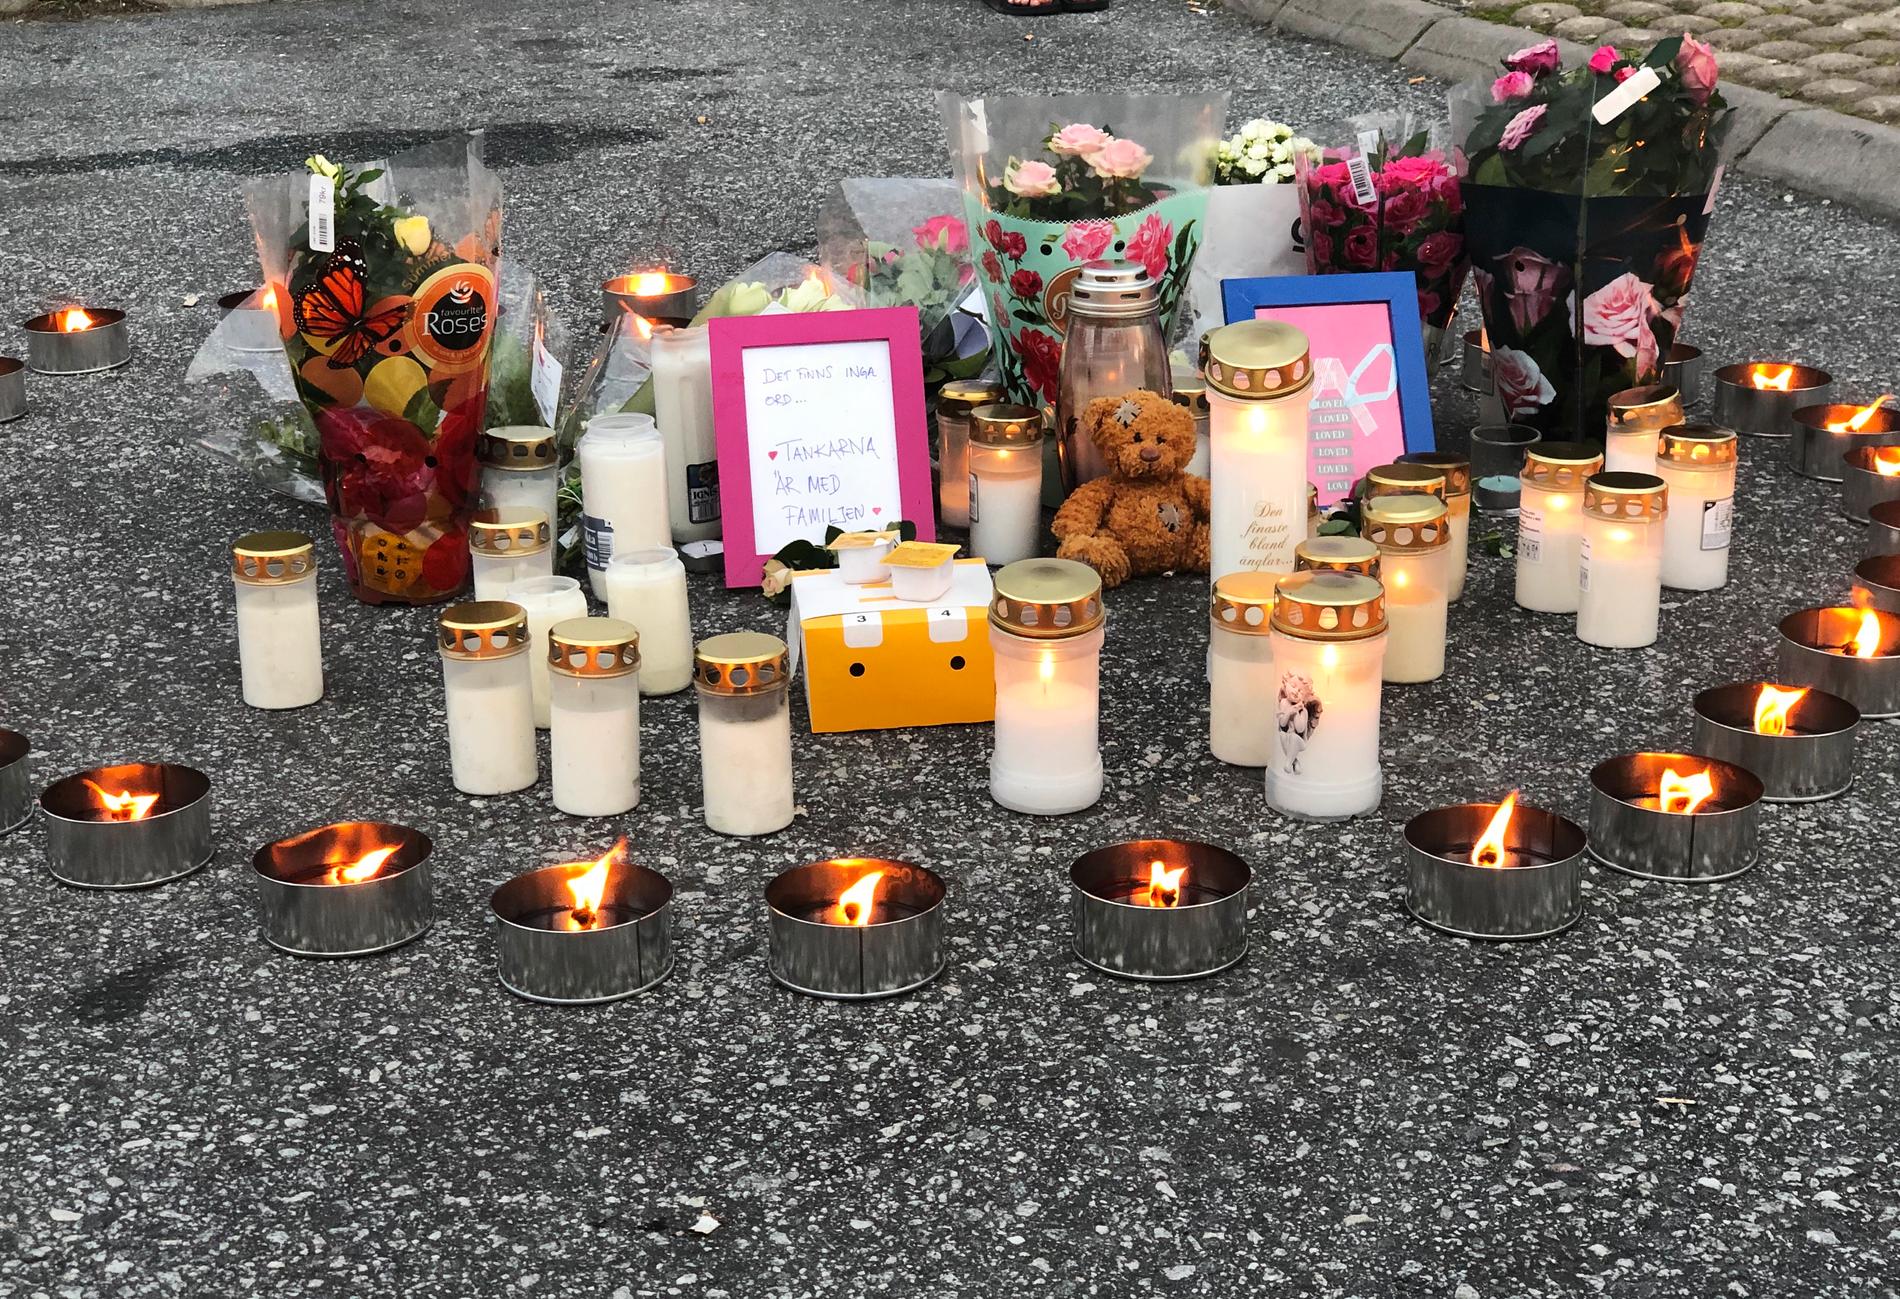 Flera personer har lagt blommor och ljus på platsen där den 12-åriga flickan sköts.